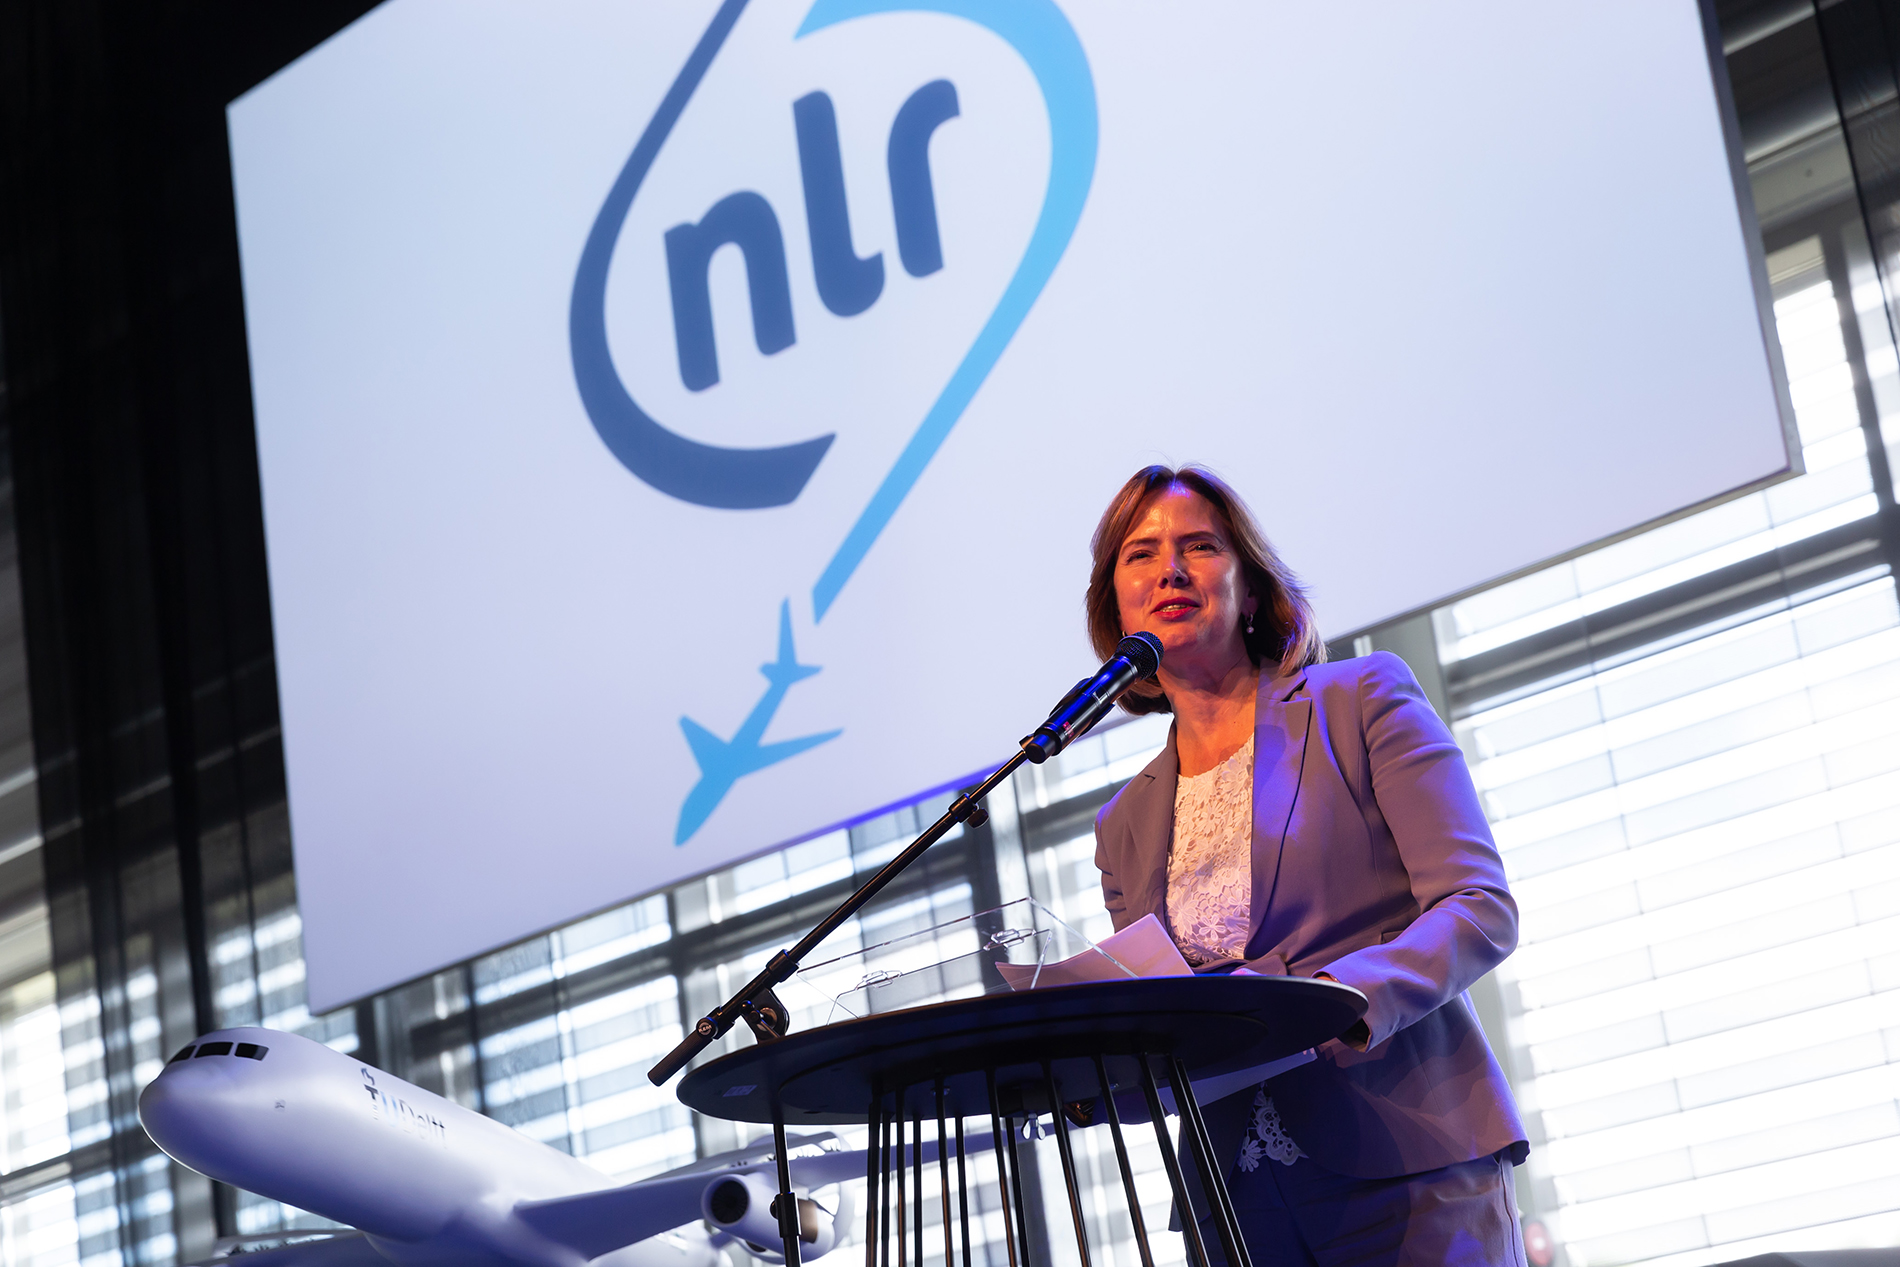 NLR Electric Flight Panel - Minister Cora van Nieuwenhuizen